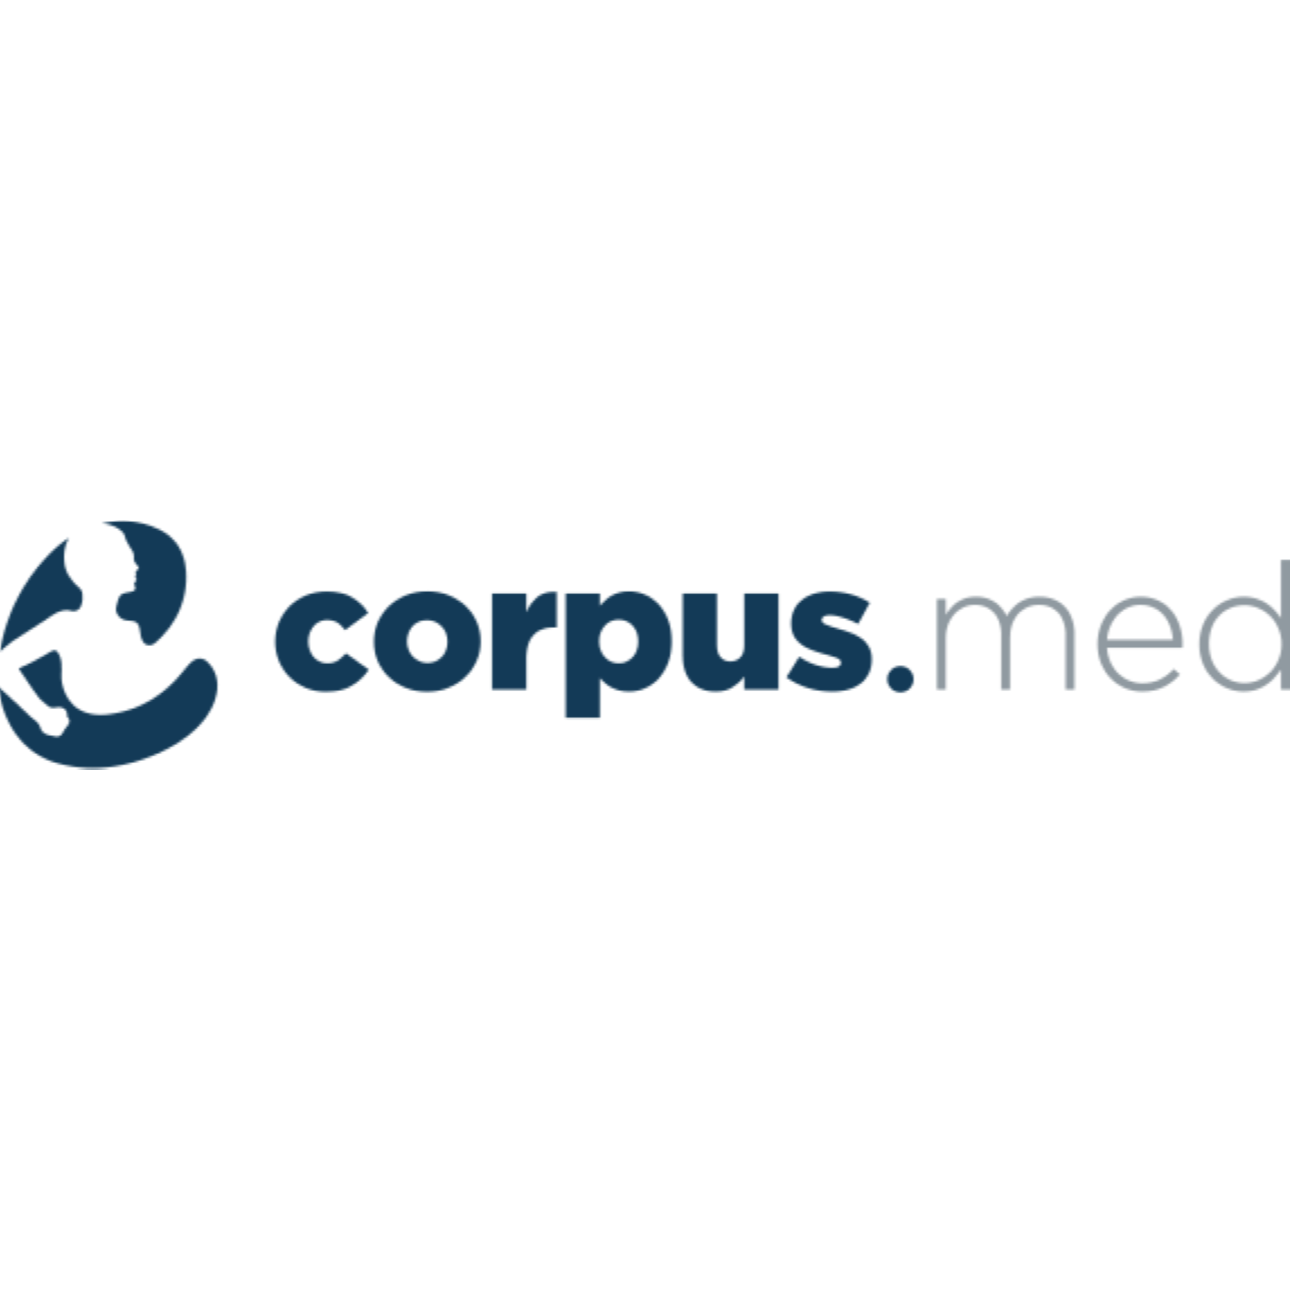 Logo corpus.med Brigitte Neugebauer